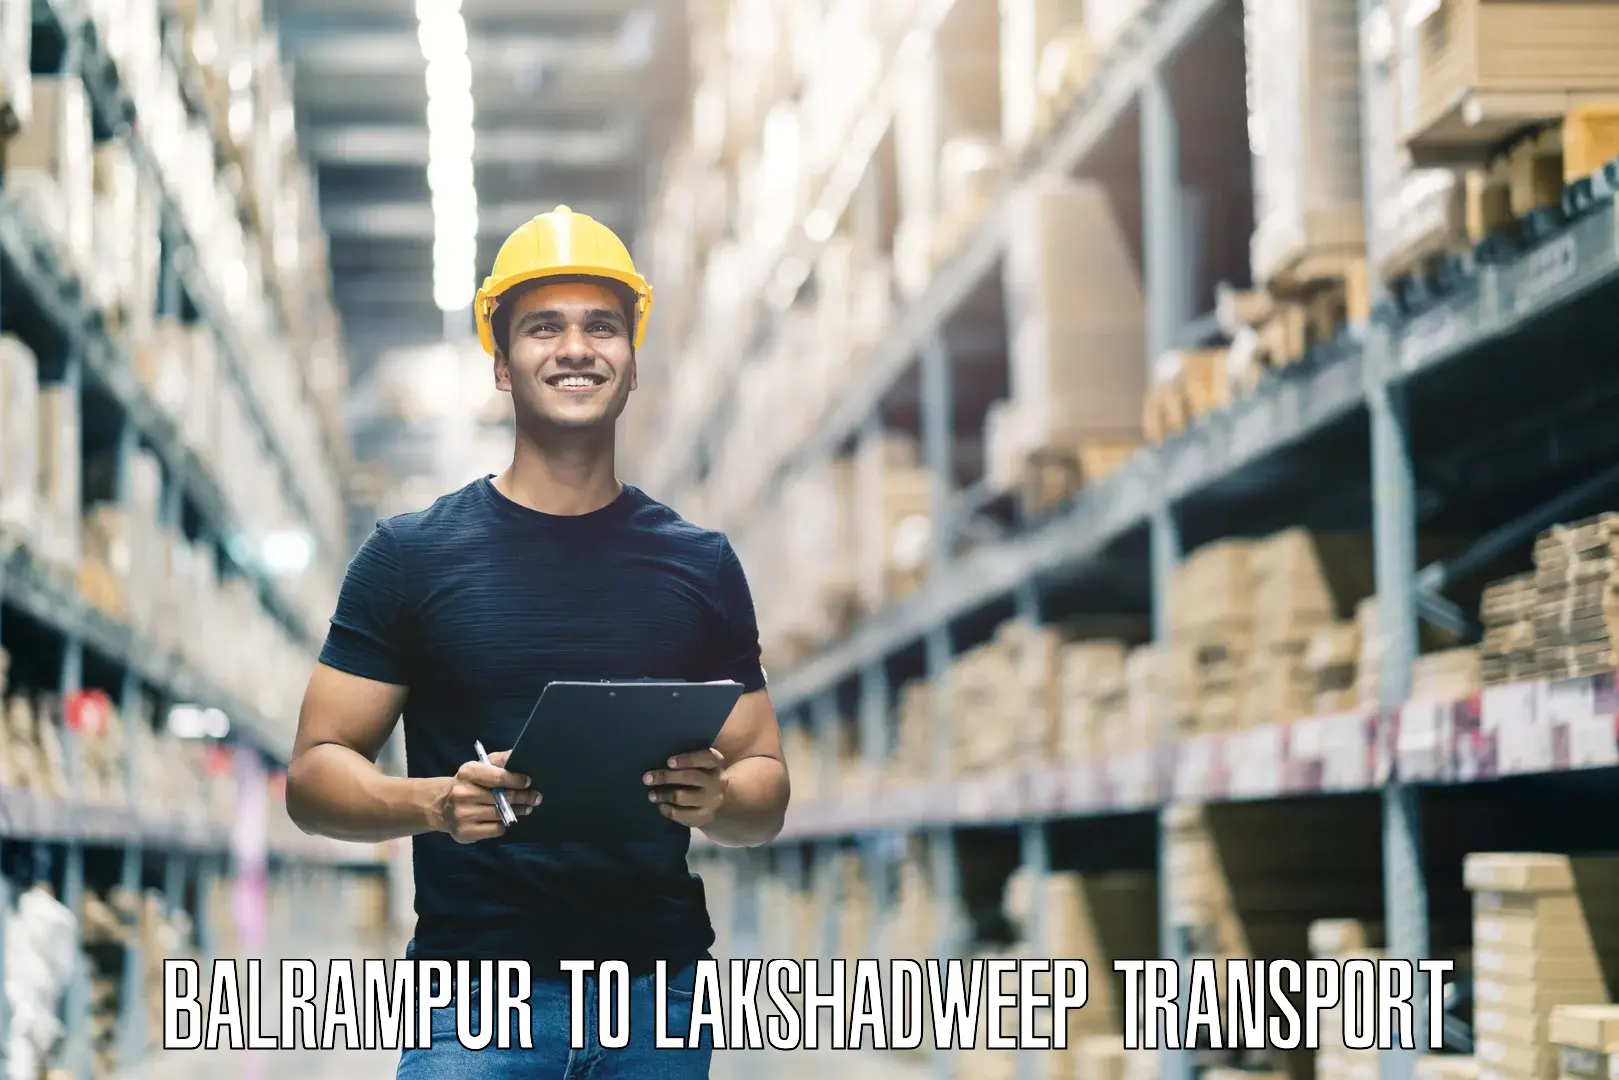 Furniture transport service Balrampur to Lakshadweep